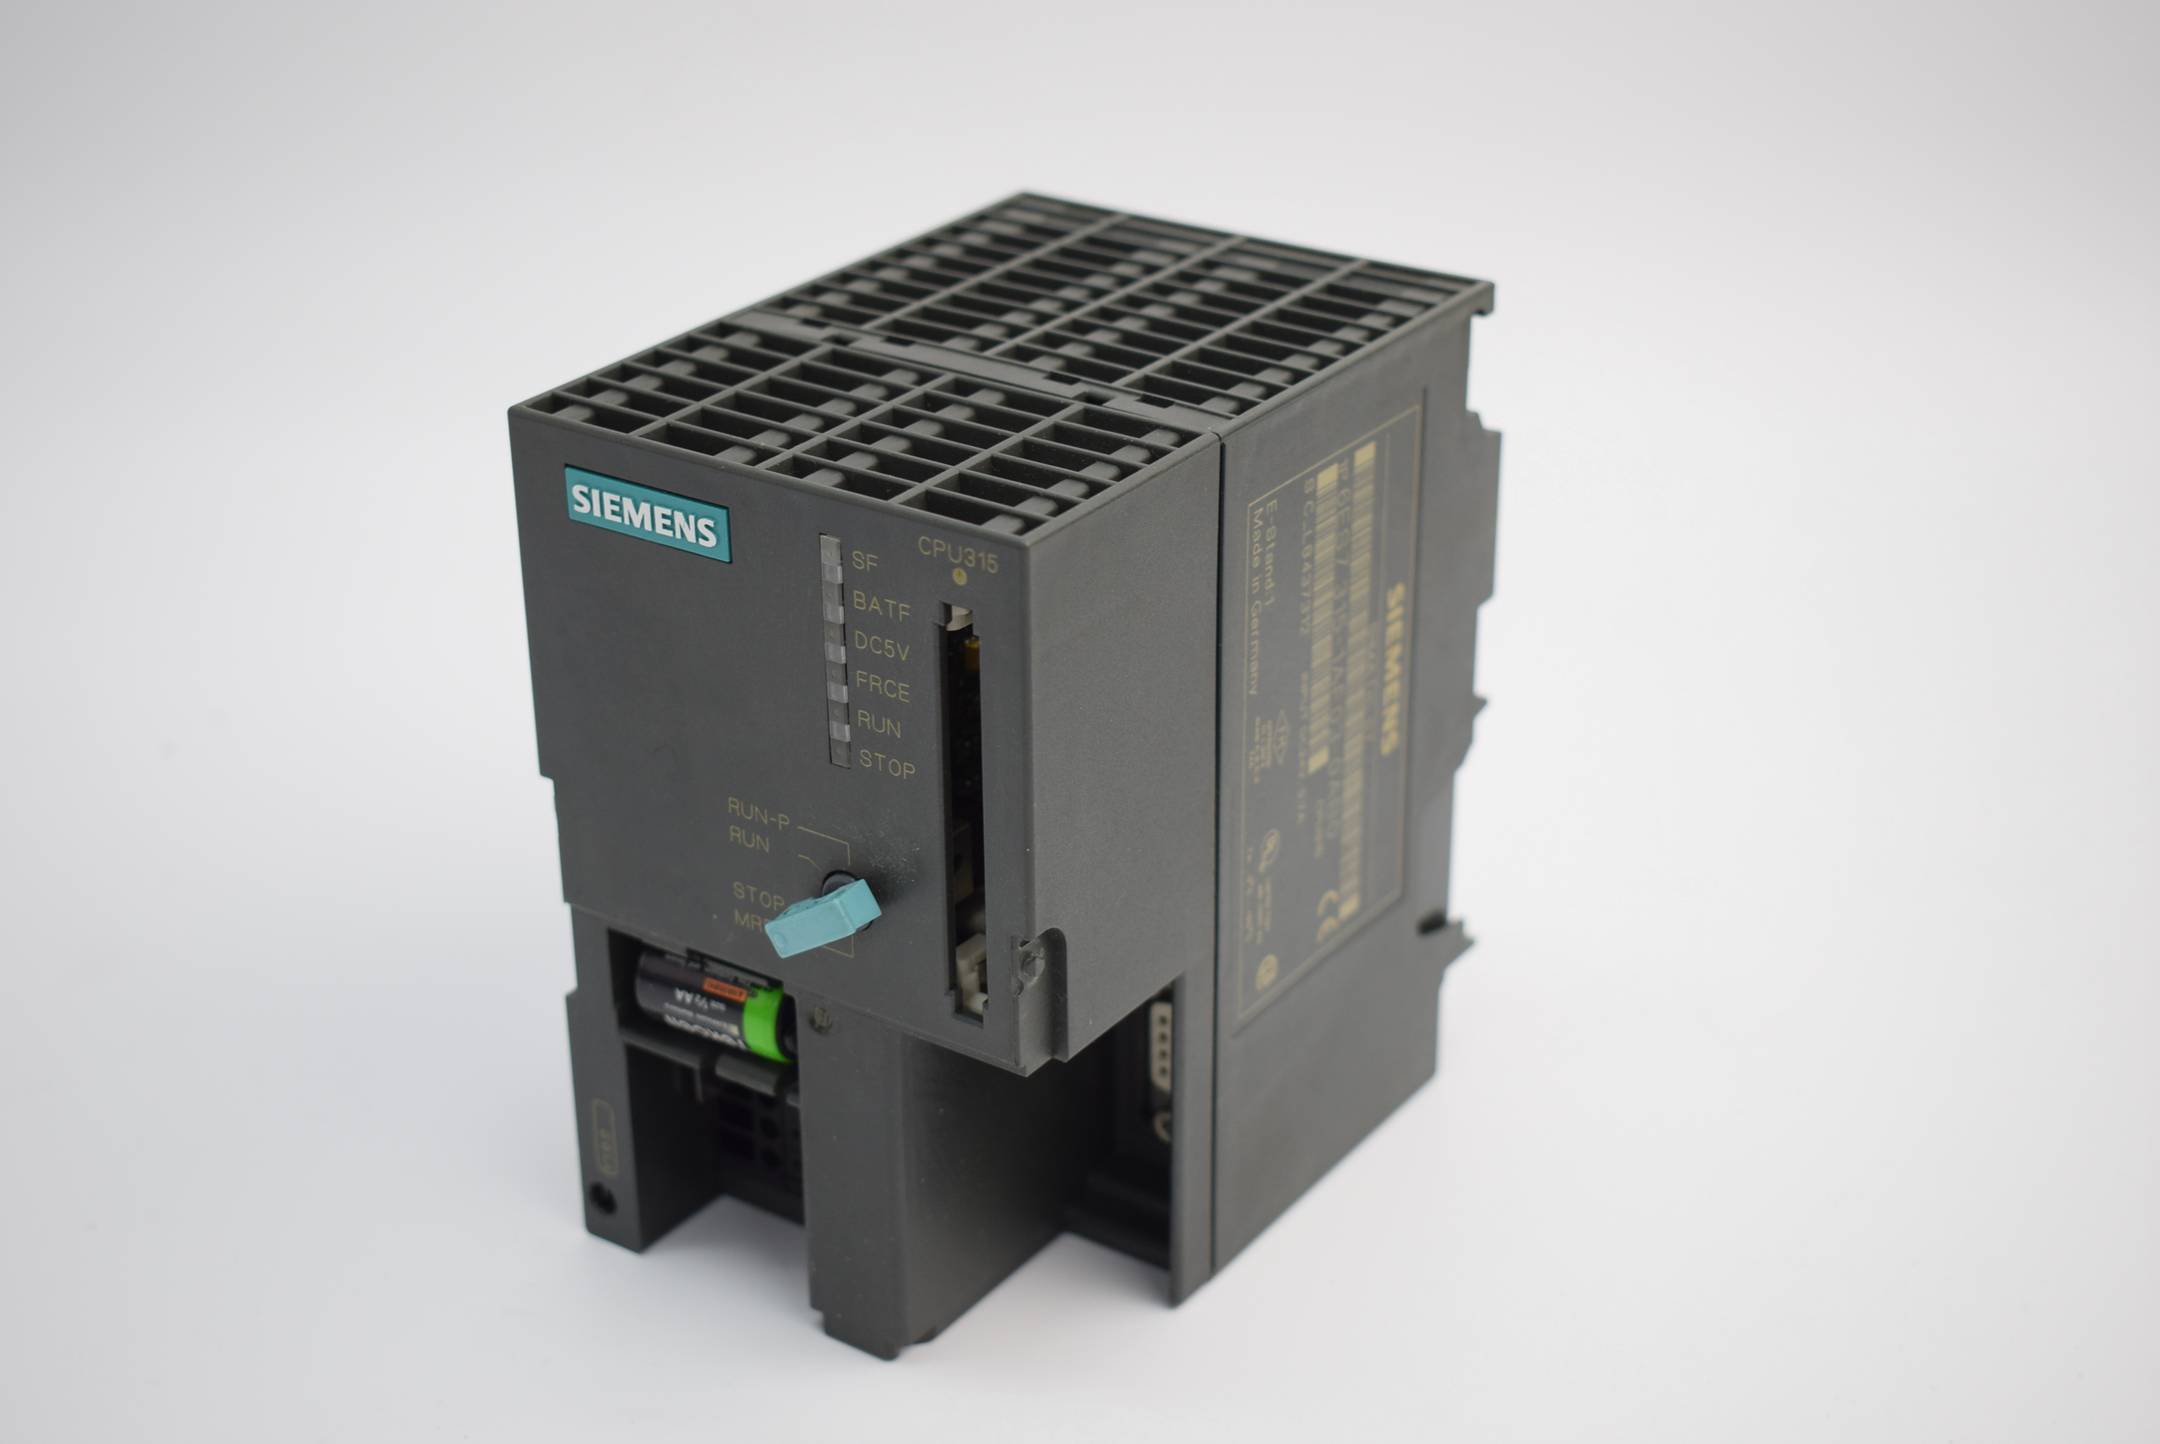 Siemens simatic S7-300 CPU315 6ES7 315-1AF03-0AB0 ( 6ES7315-1AF03-0AB0 ) E1 